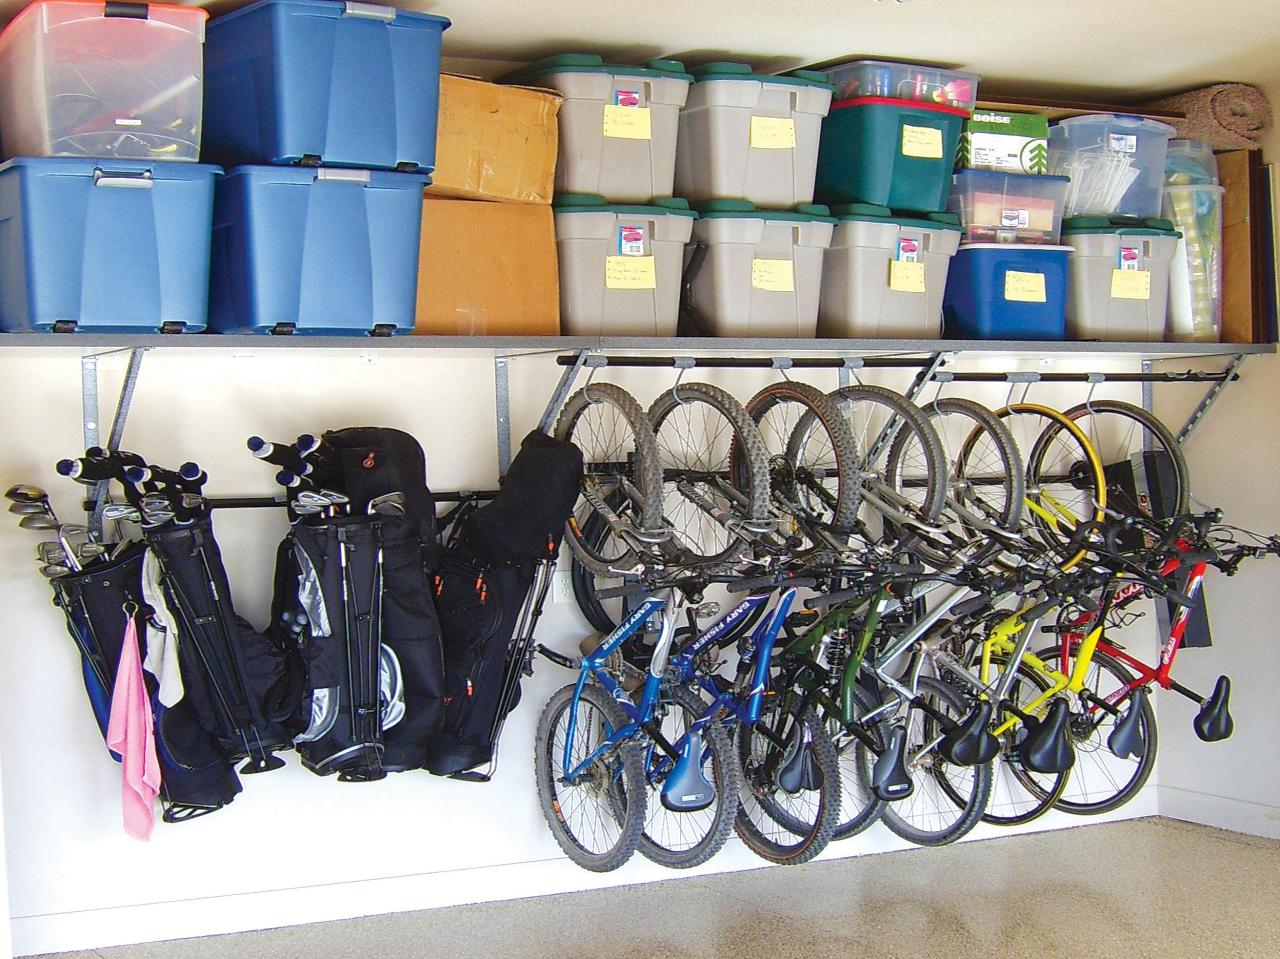 bike racks free up floor space by mounting bikes on